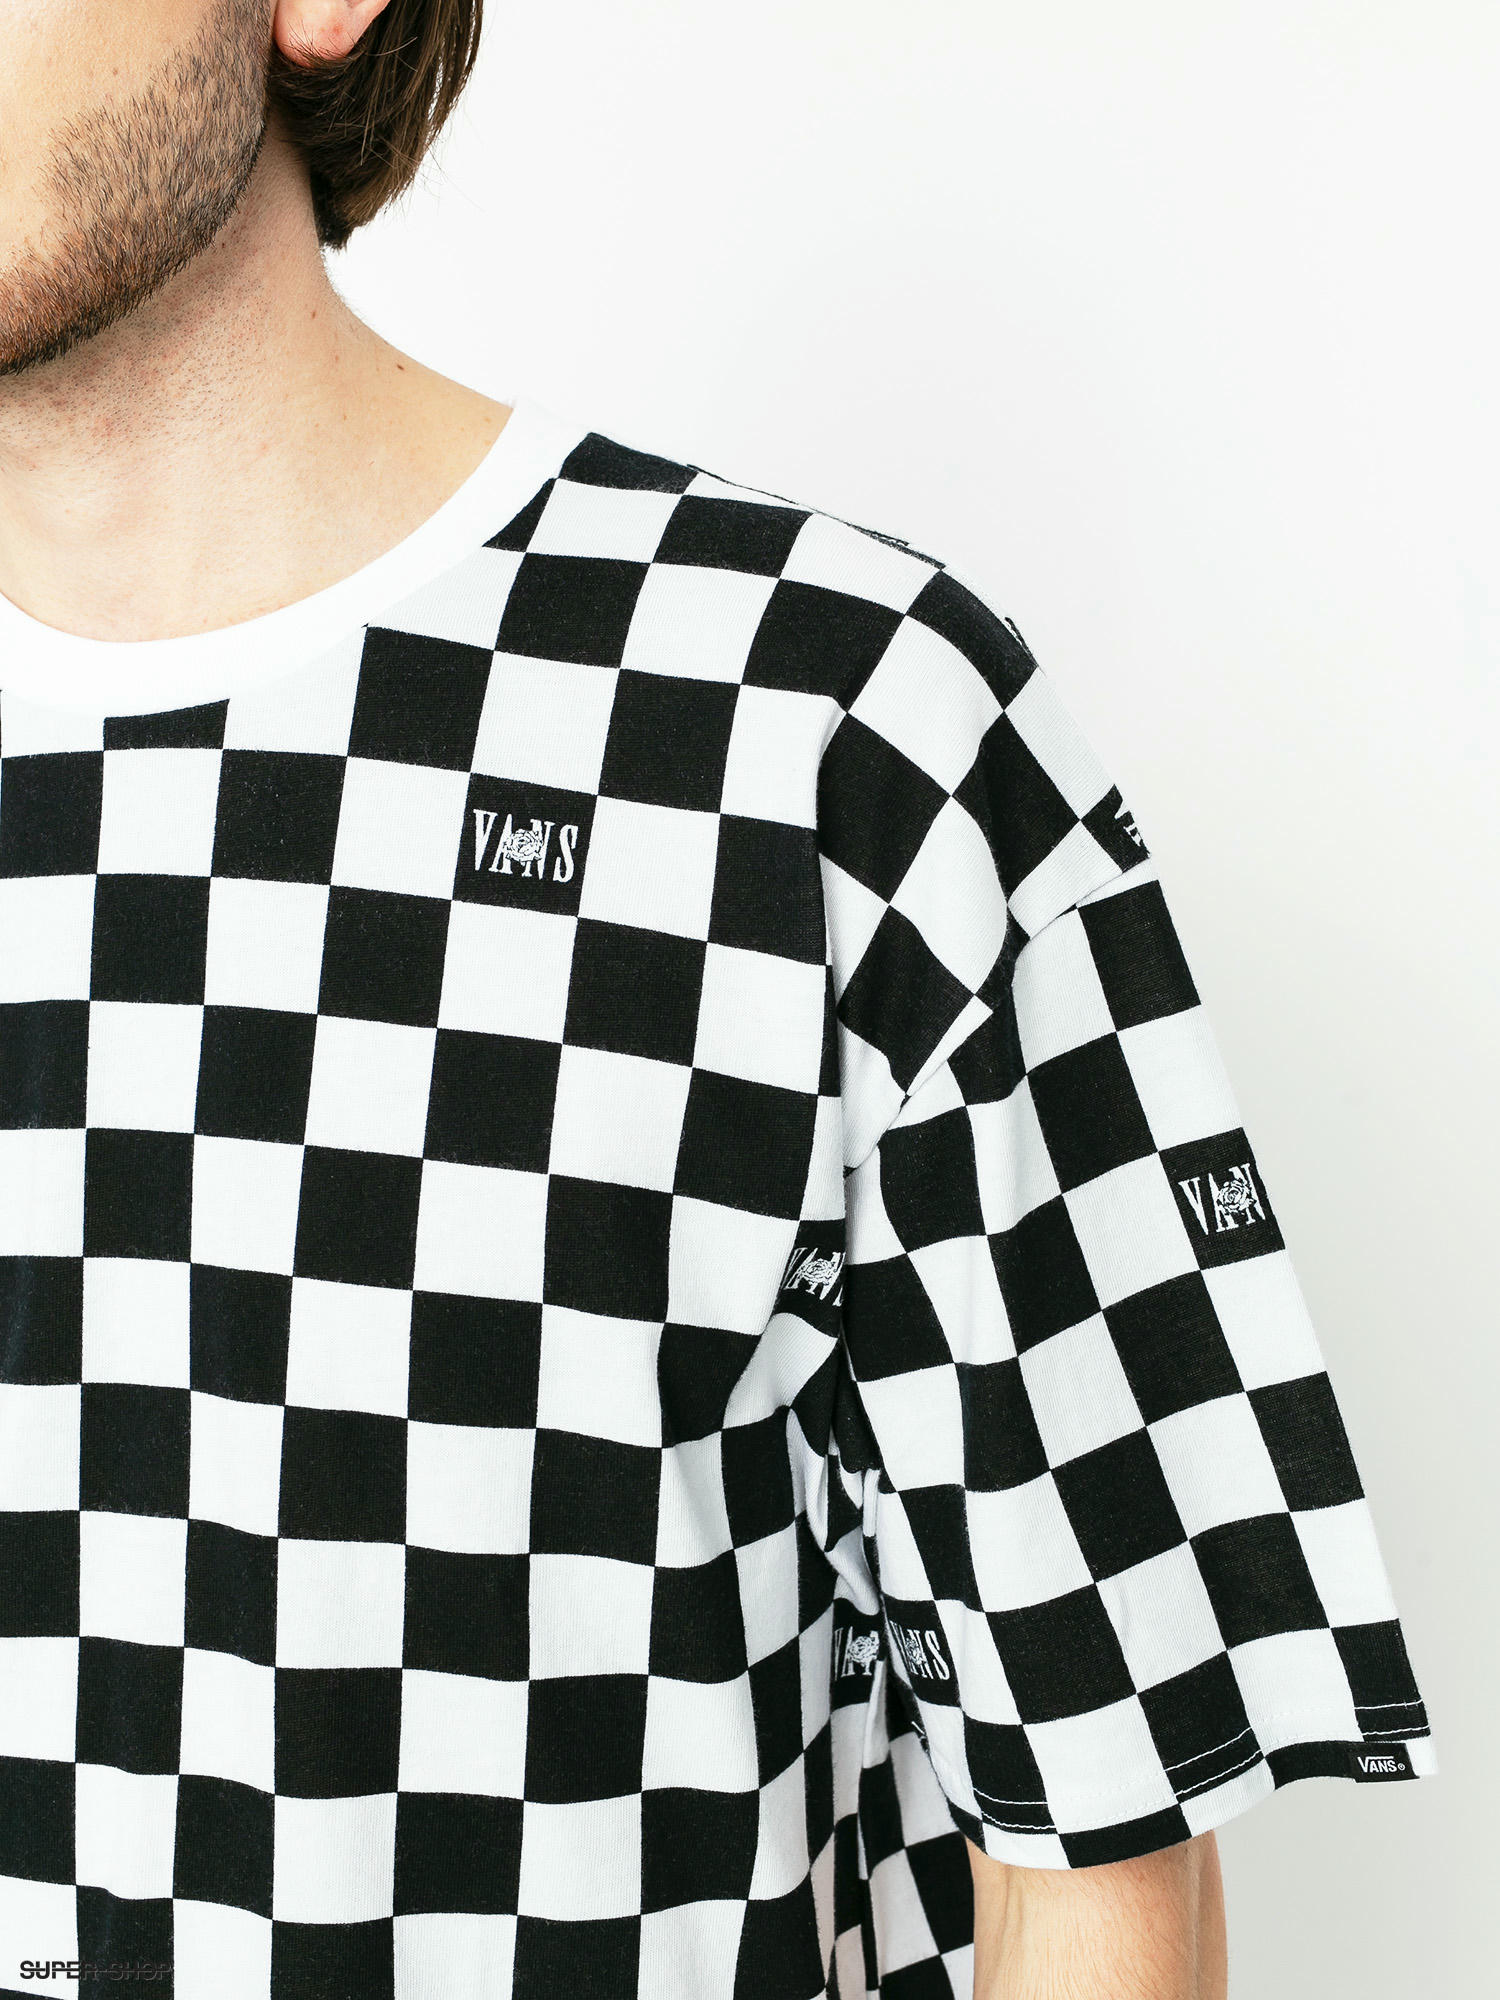 vans black and white checkered shirt